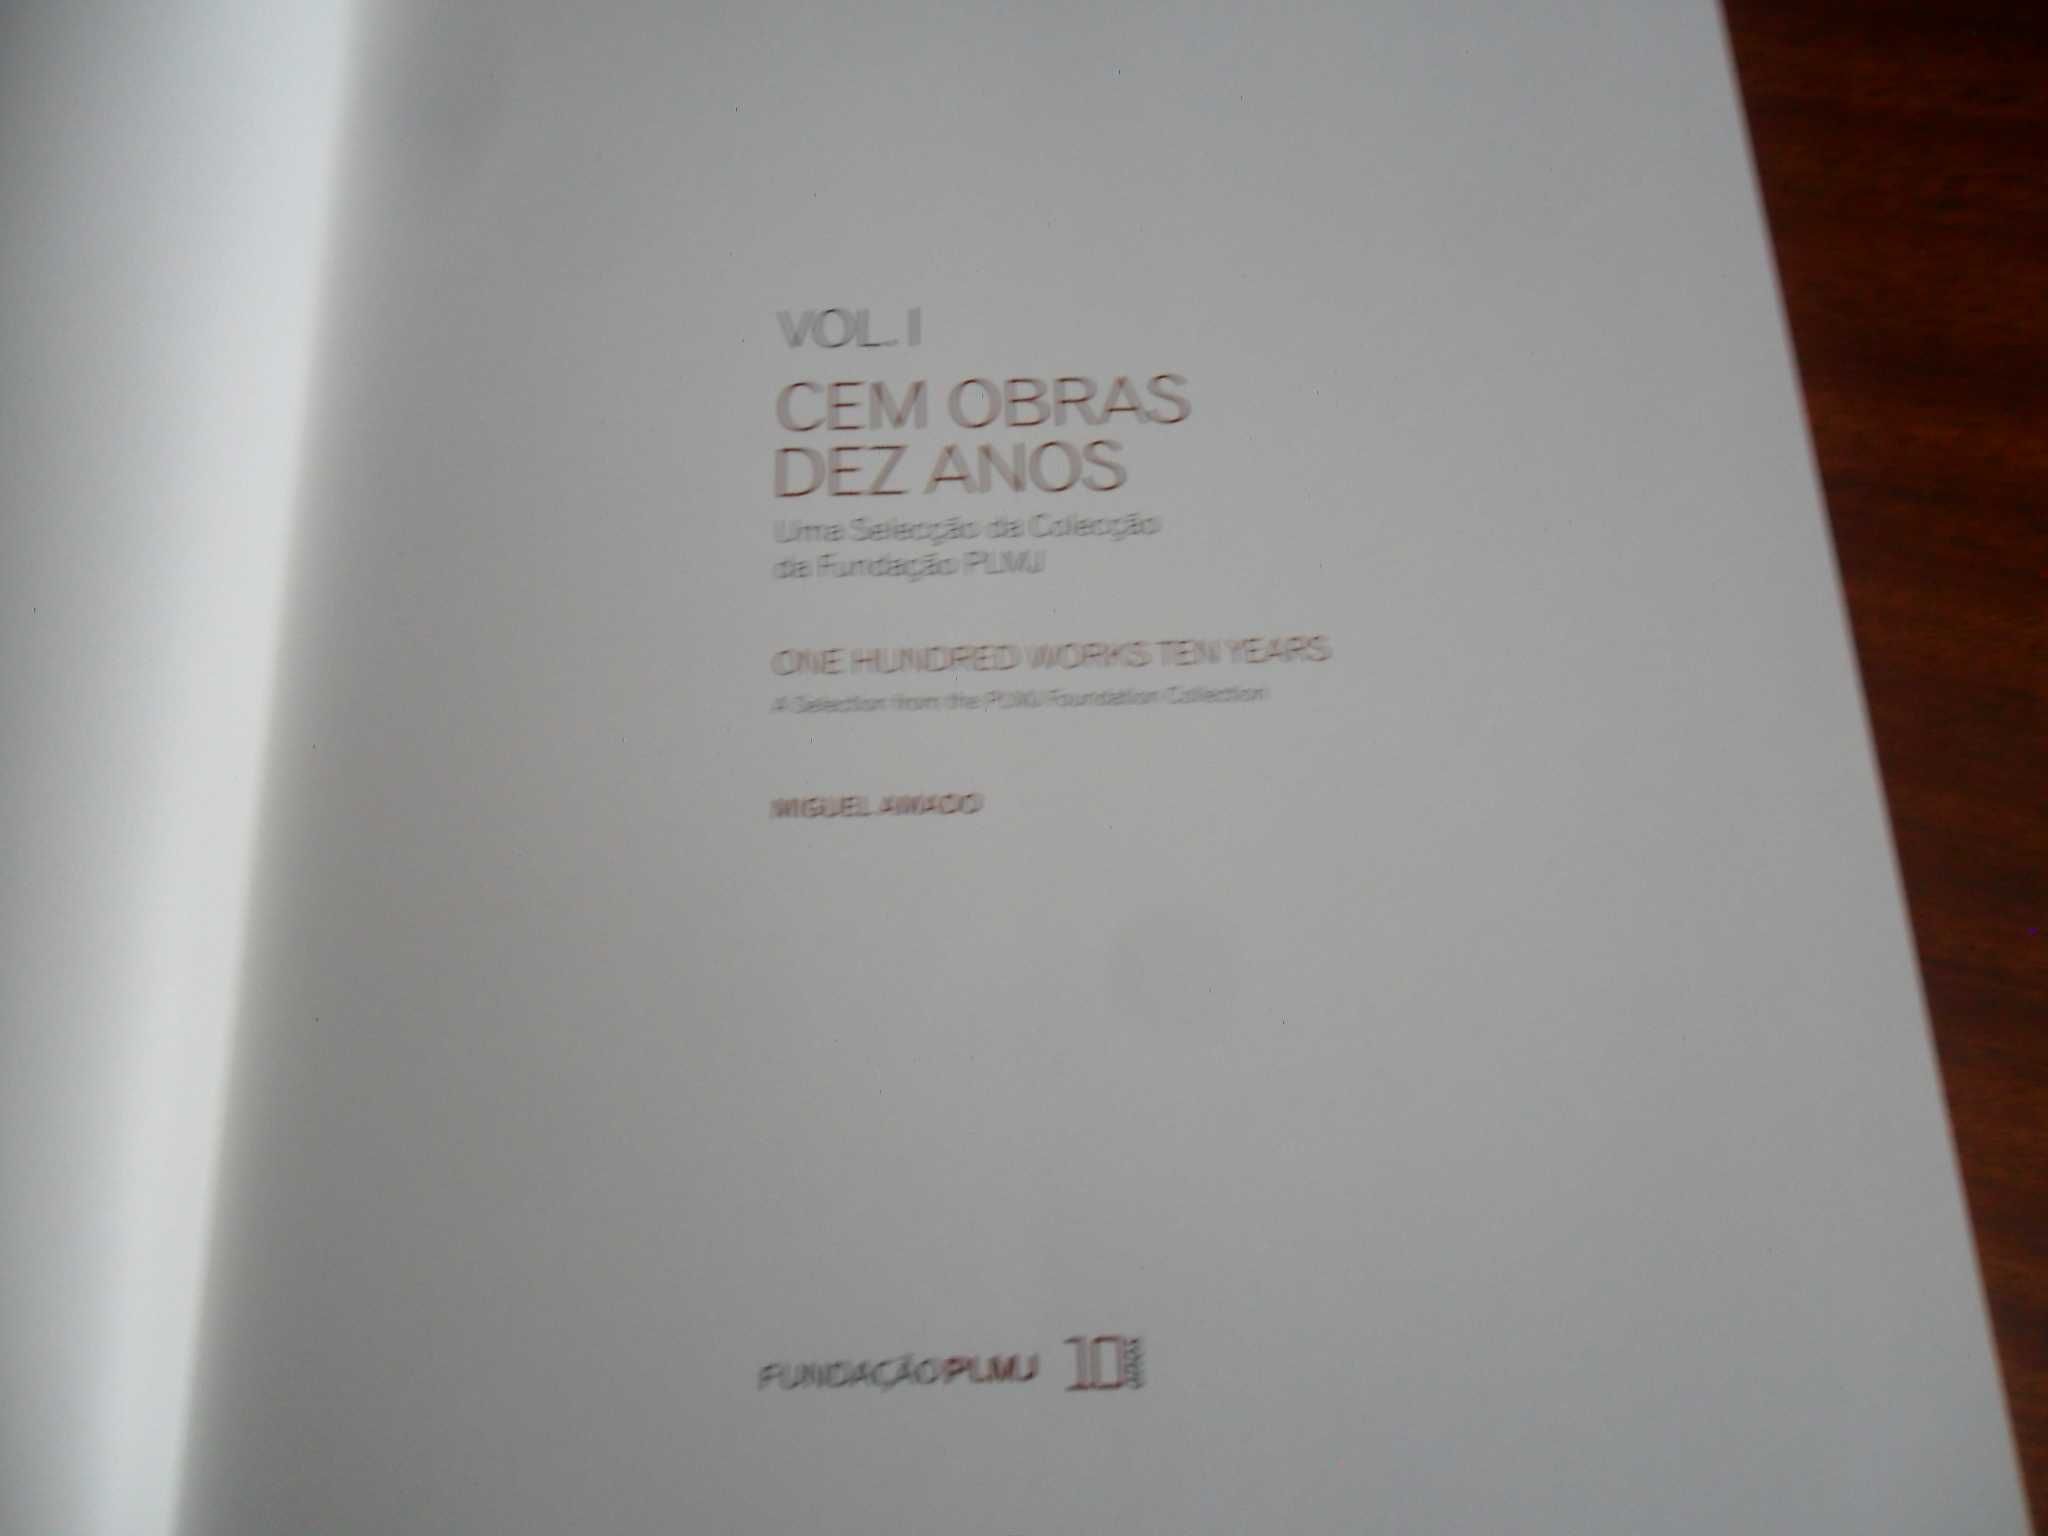 "Cem Obras, Dez Anos" - Fundação PLMJ de Miguel Amado - 1ª Edição 2011